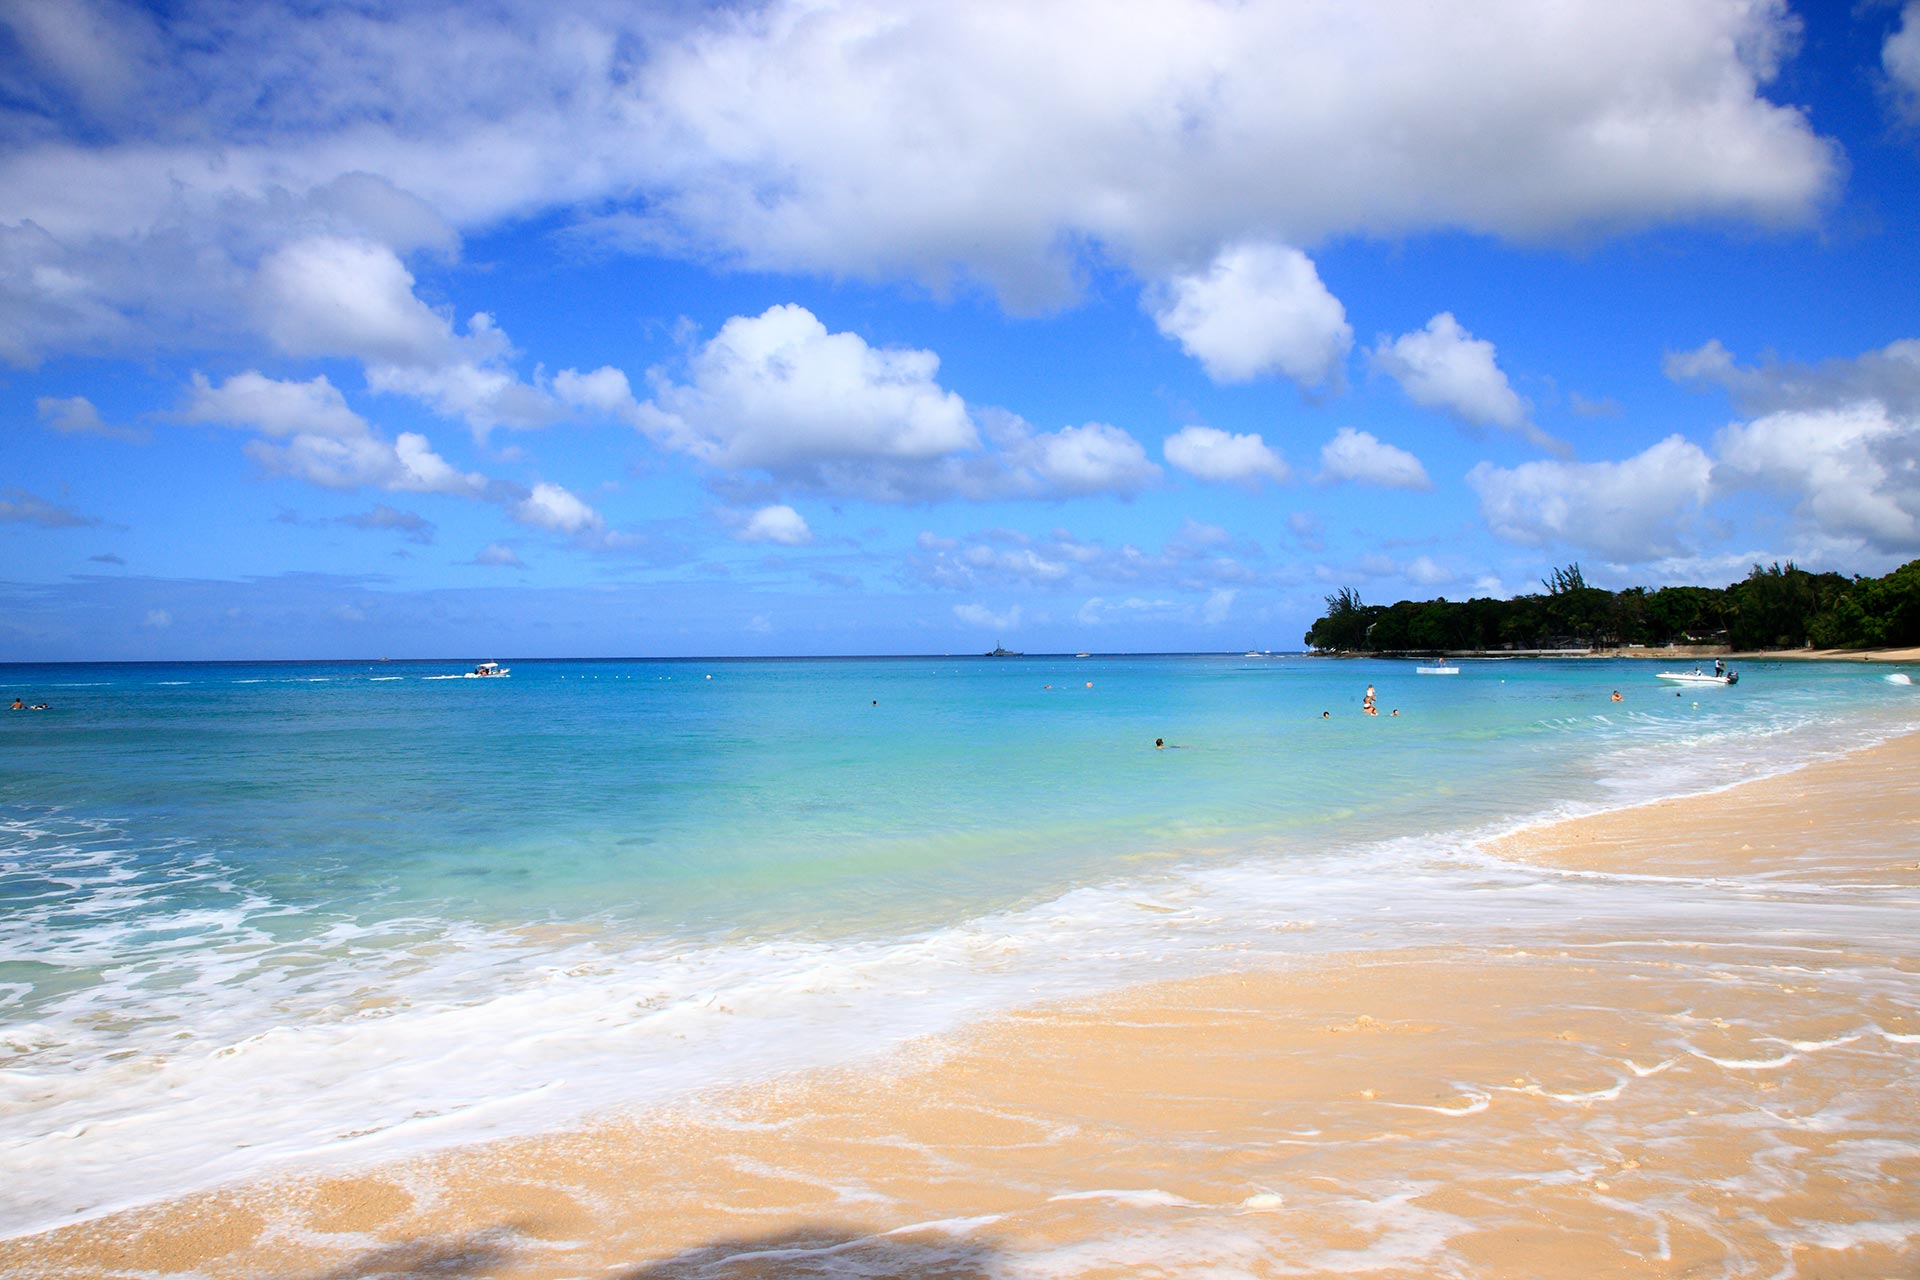 Ubicada en el área de Carlisle Bay, Brown Beach ofrece algunas de las arenas y aguas más impresionantes del Caribe